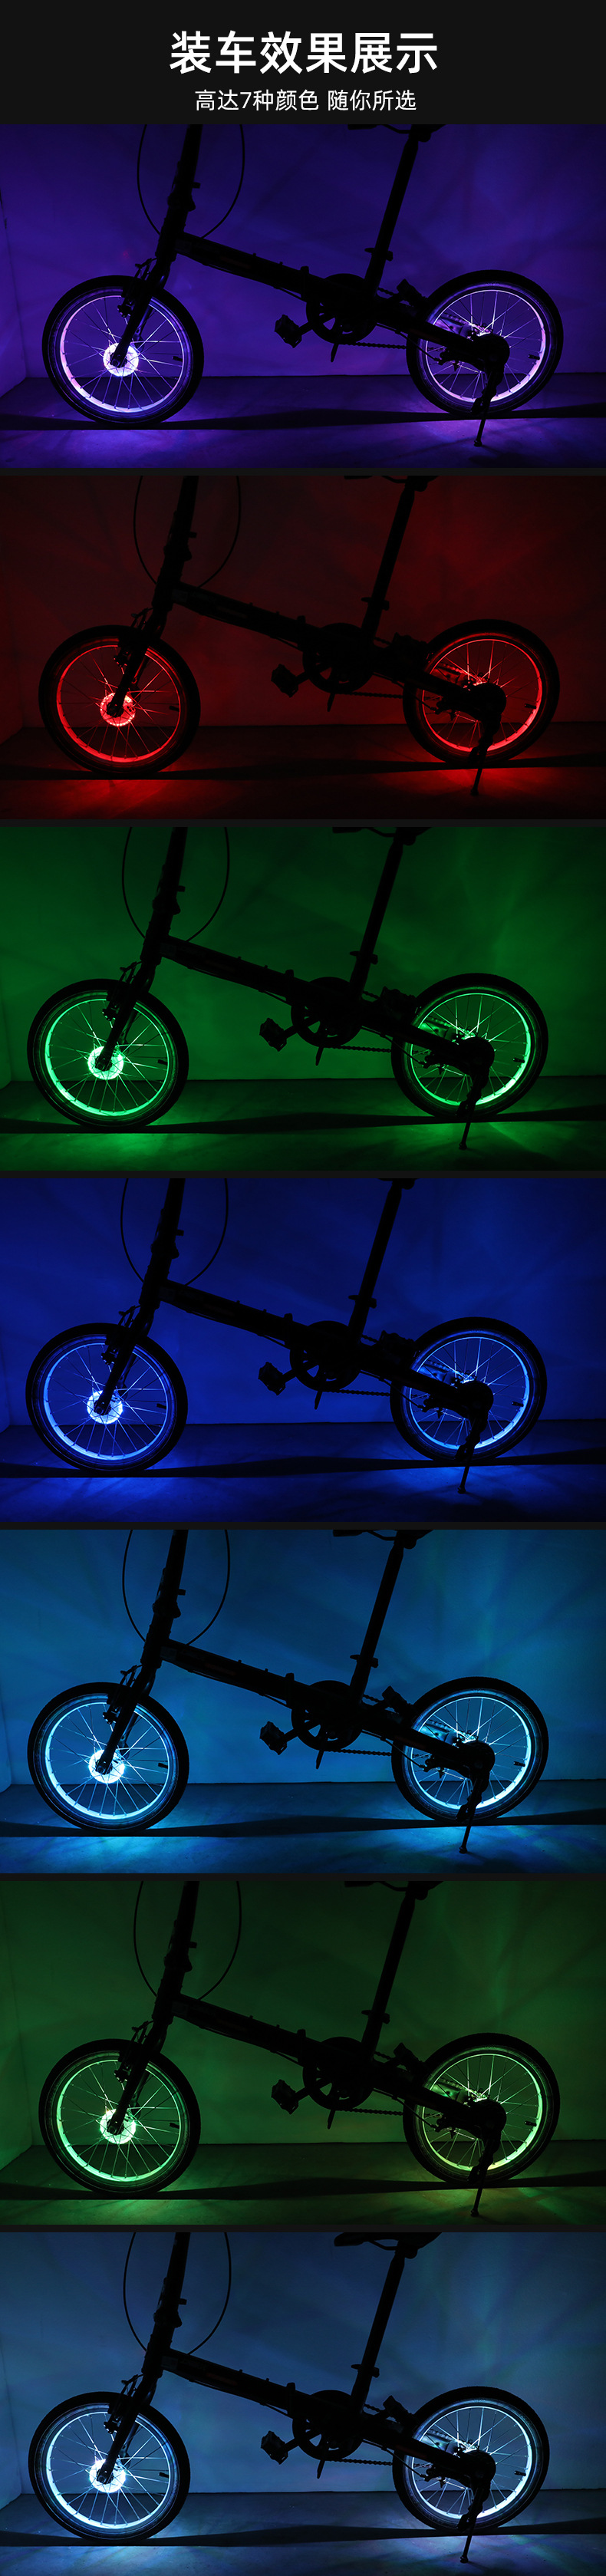 自行车充电花鼓灯儿童平衡车风火轮装饰辐条七彩LED感应轮毂灯详情12